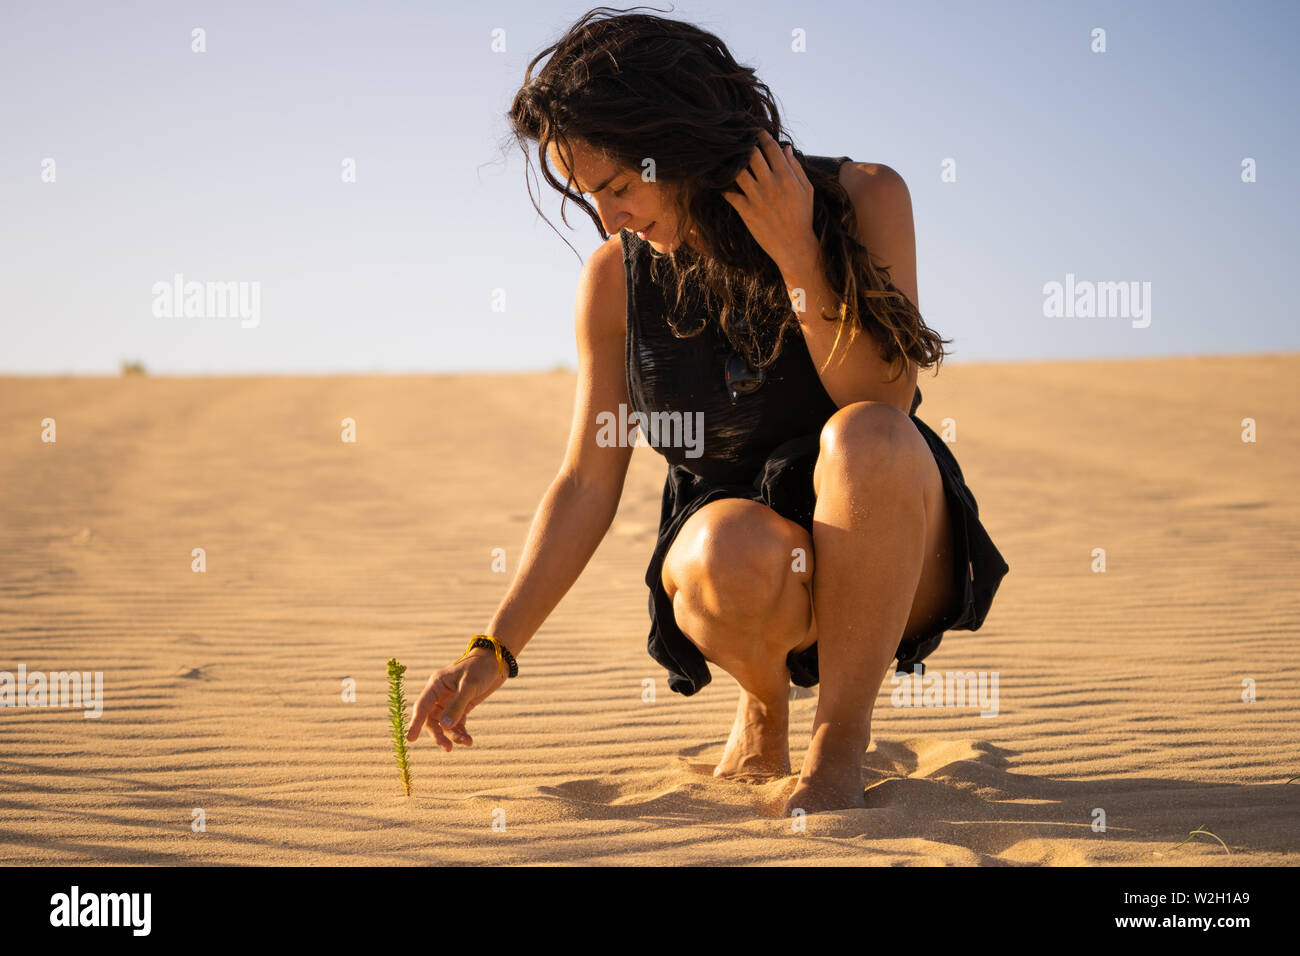 Fuerteventura, Îles Canaries - jeune femme dans le désert. L'Espagne. Banque D'Images